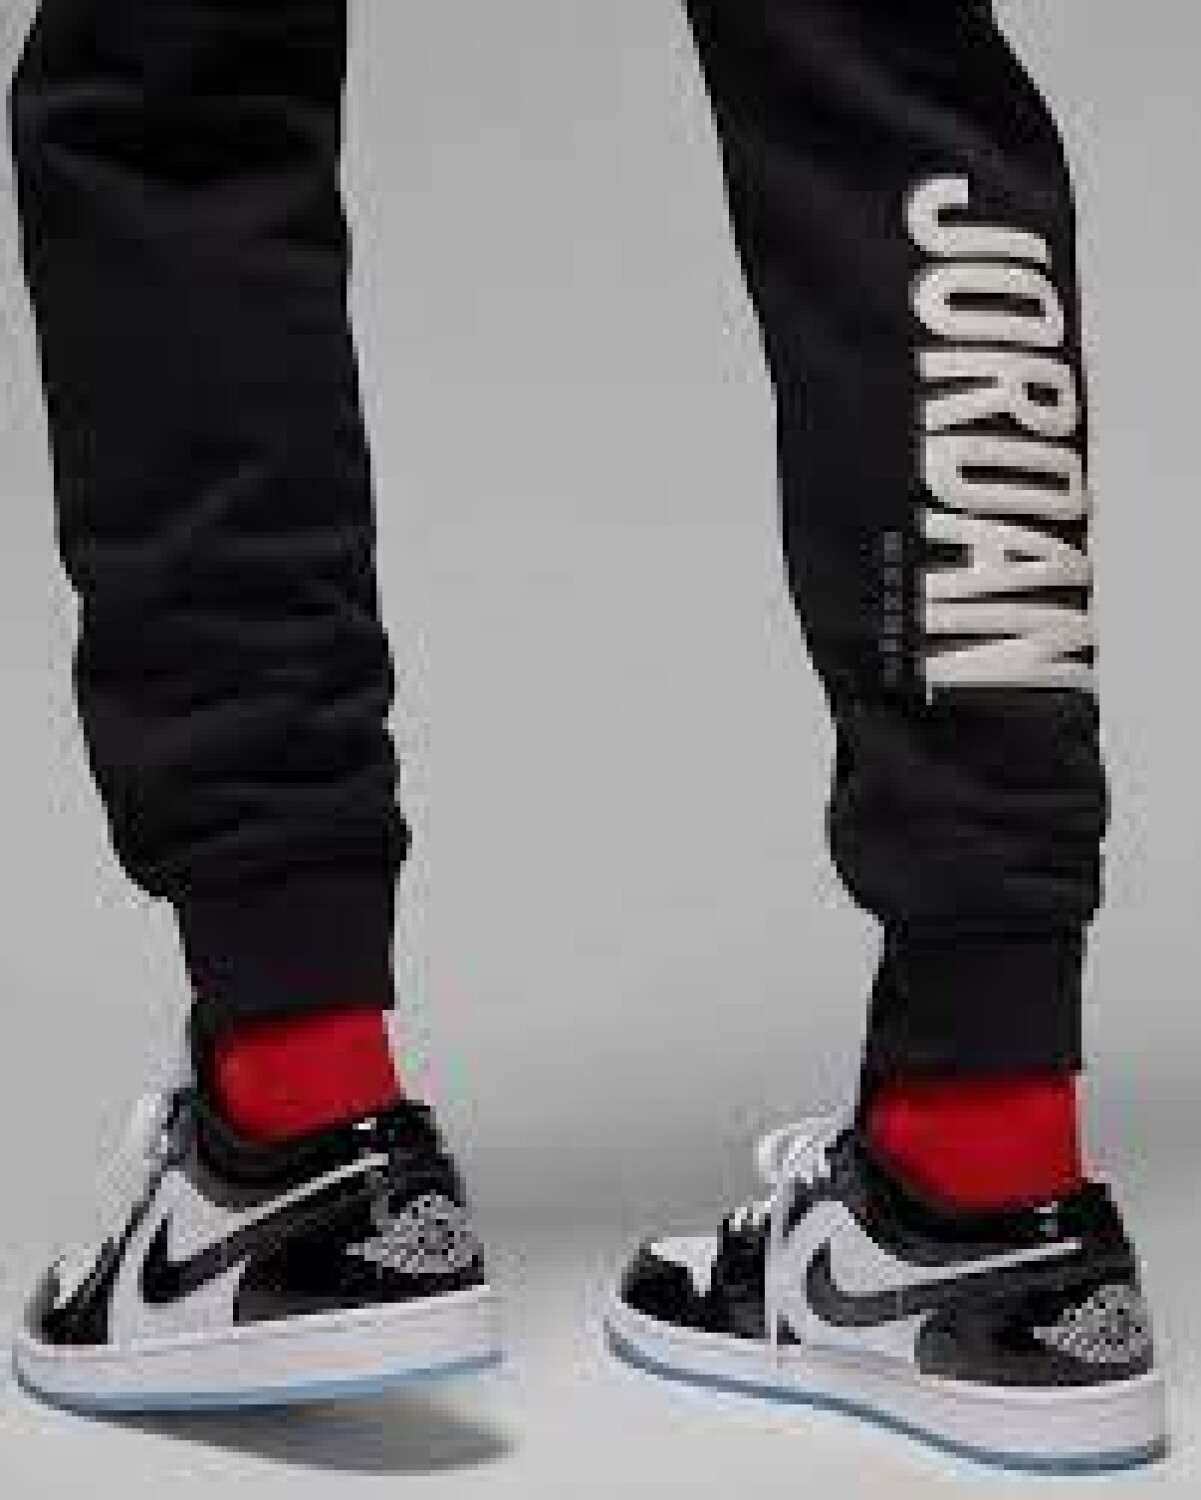 Pantalon Nike Jordan Hombre Flt Mvp Hbr Flc 2 Black/Rush - S/C — Menpi